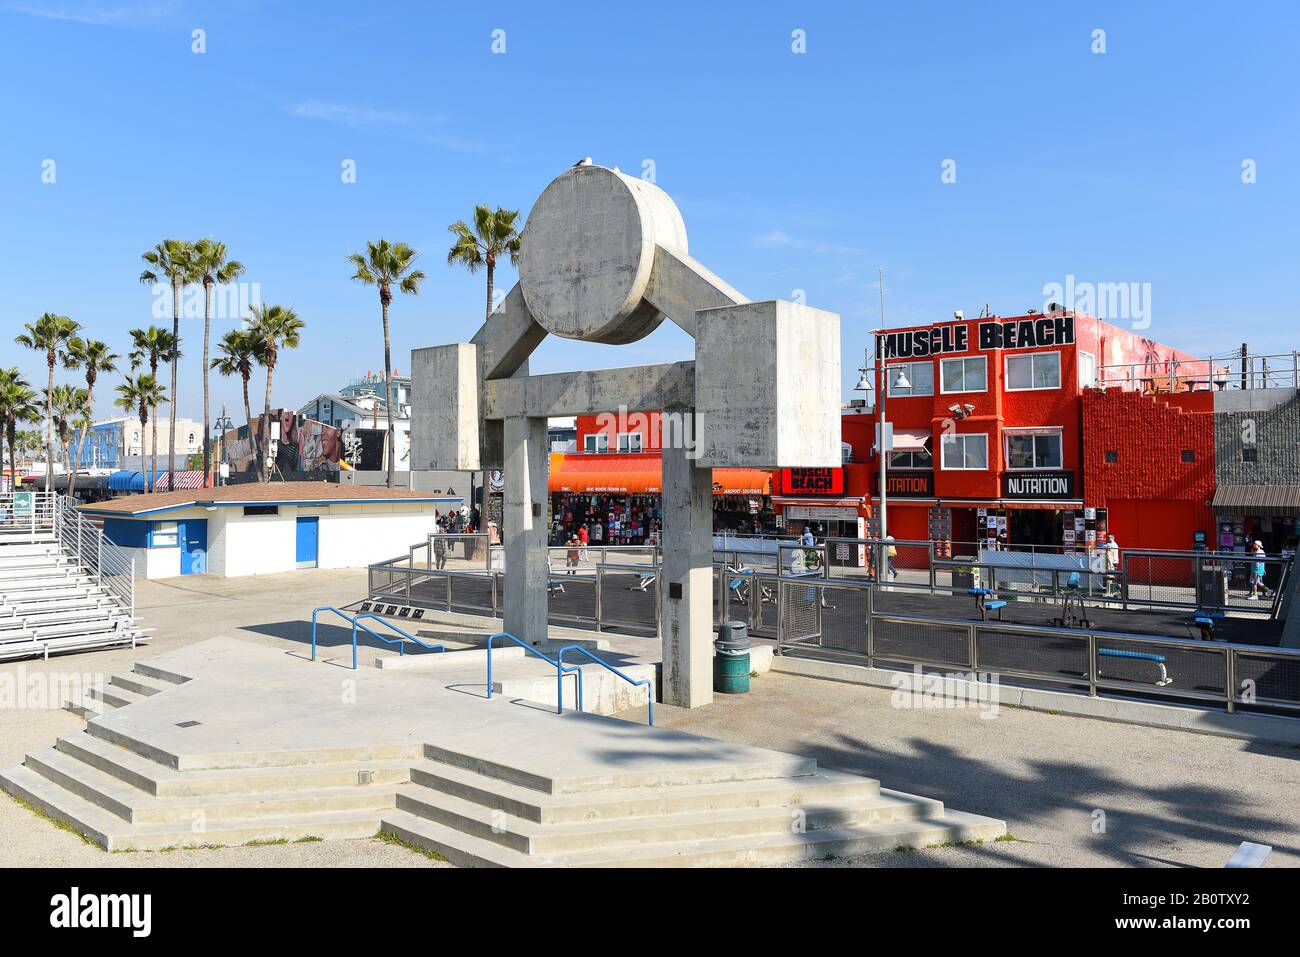 Venecia, CALIFORNIA - 17 FEB 2020: El gimnasio al aire libre Muscle Beach es el lugar de nacimiento del boom físico de la aptitud en los Estados Unidos. Foto de stock